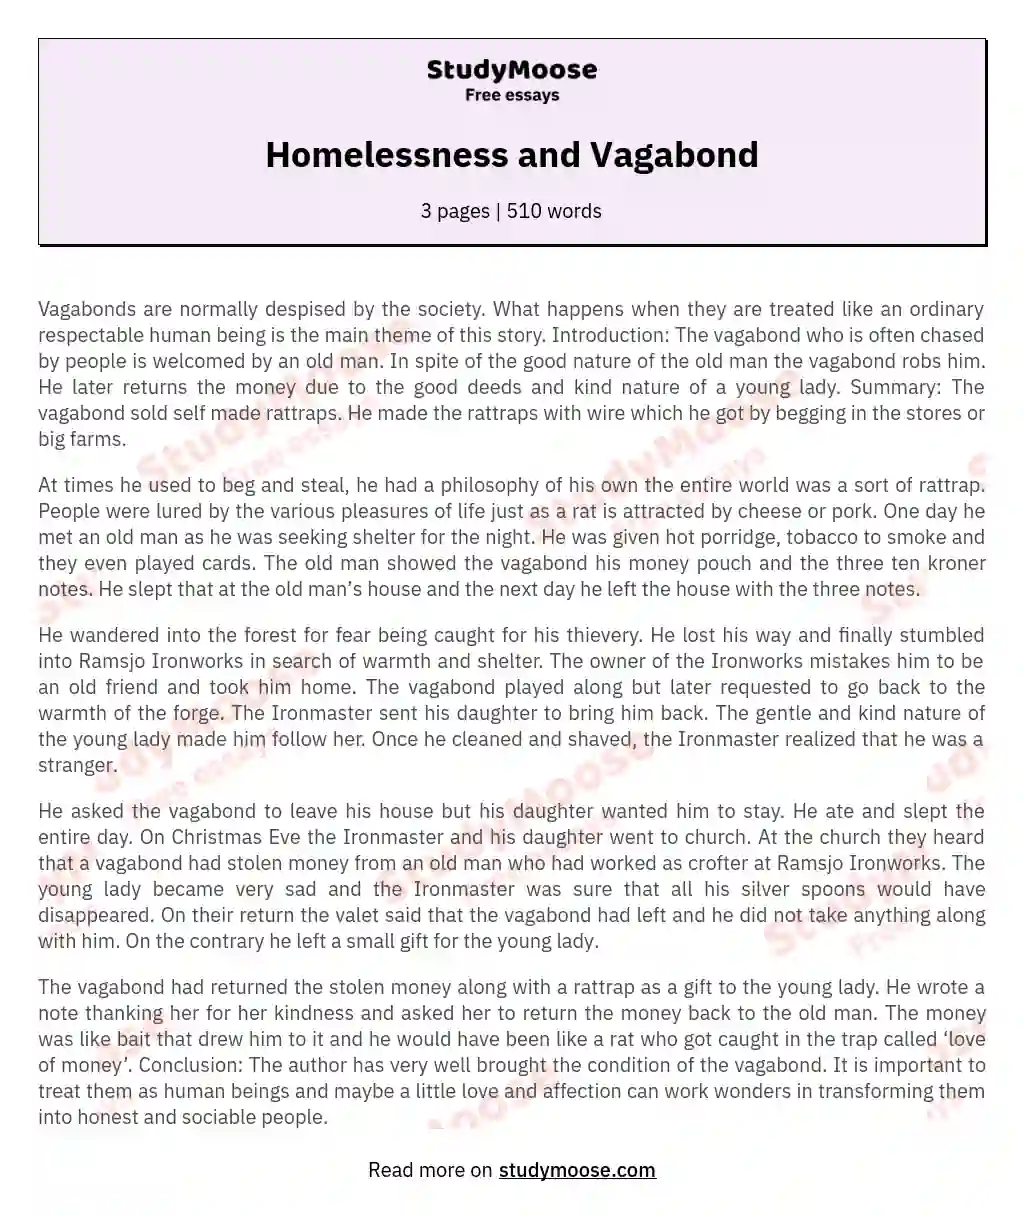 Homelessness and Vagabond essay